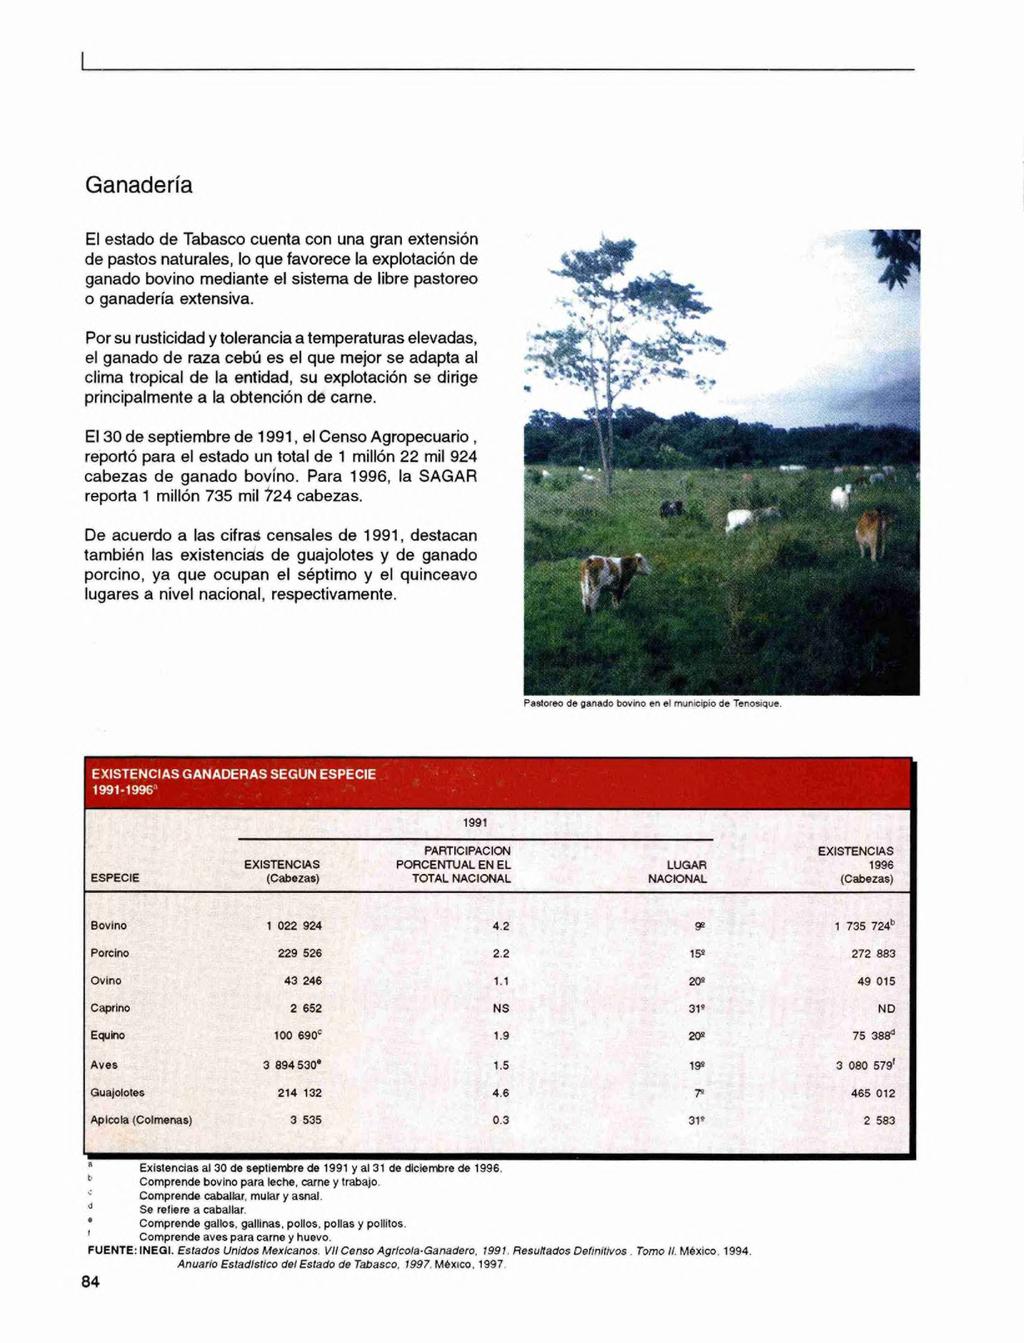 Ganadería El estado de Tabasco cuenta con una gran extensión de pastos naturales, lo que favorece la explotación de ganado bovino mediante el sistema de libre pastoreo o ganadería extensiva.